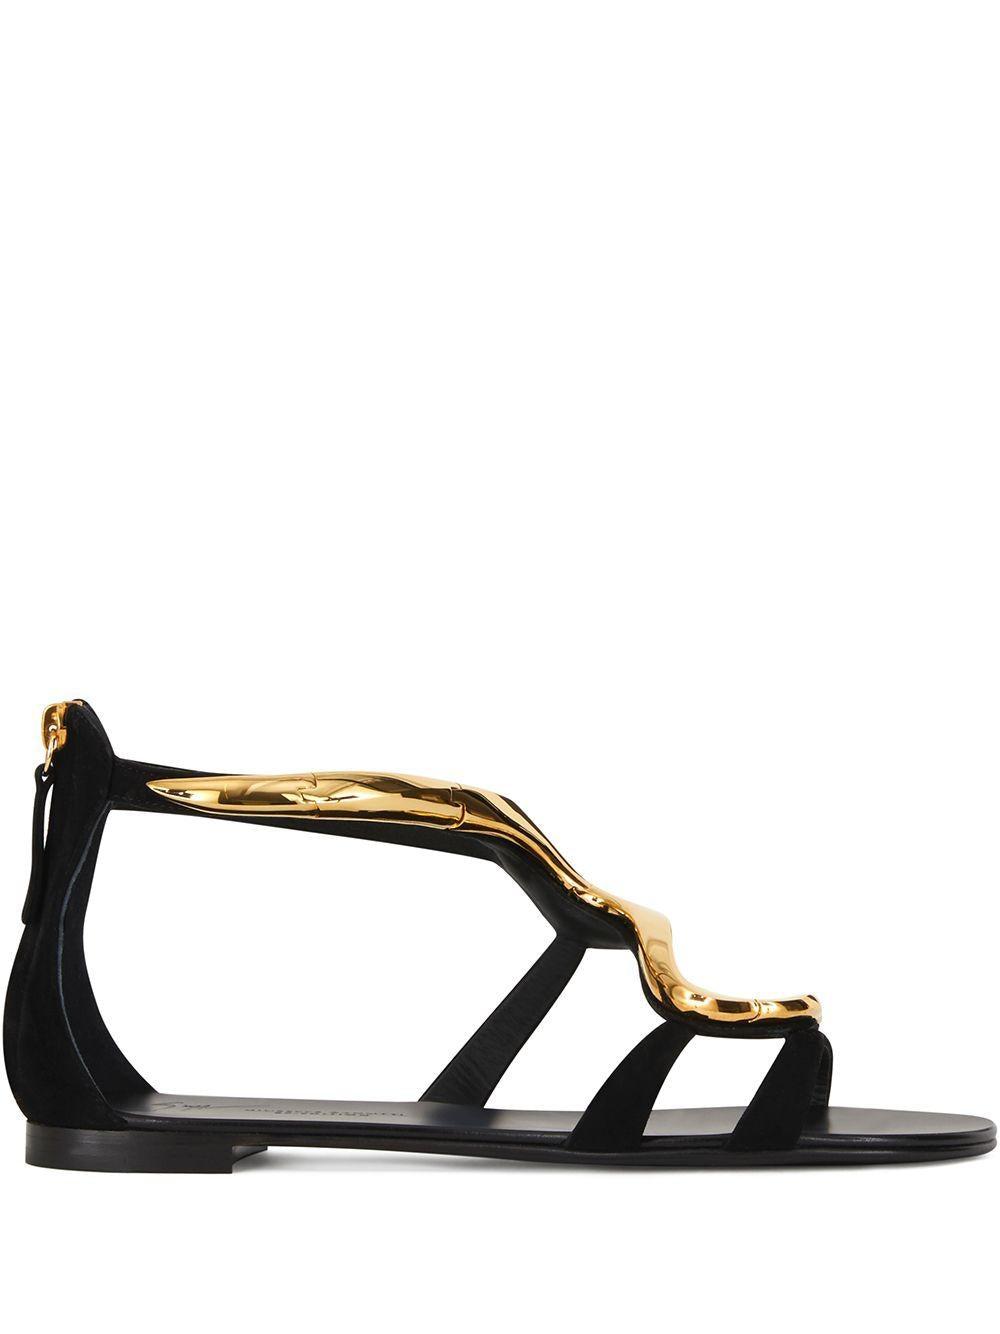 Giuseppe Zanotti Womens I900013 Flat Sandal